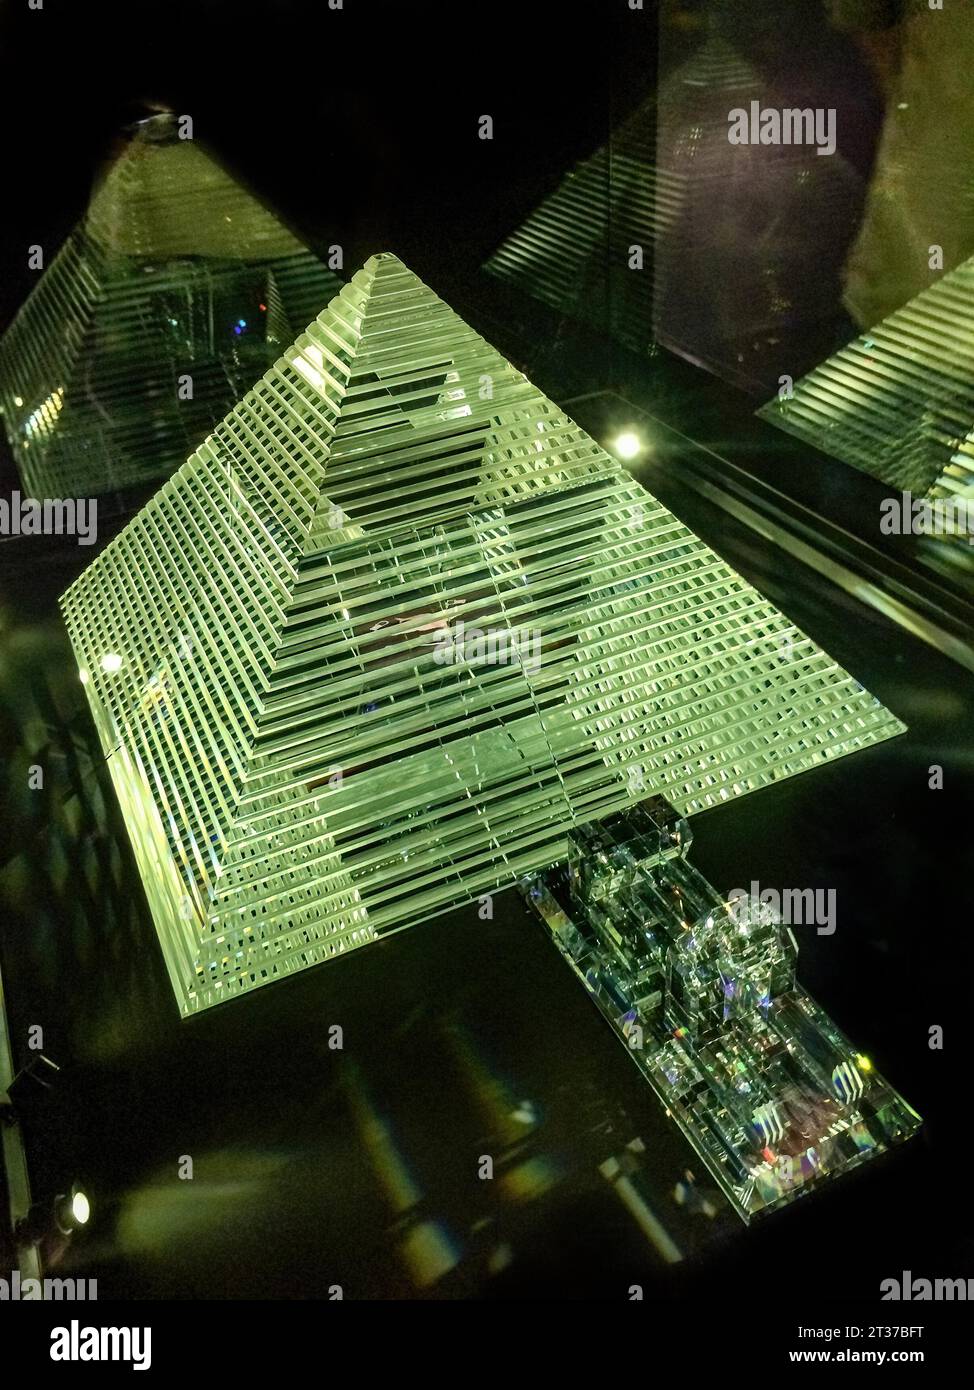 Piramide di cristallo in mostra Swarovski Crystal Worlds, Wattens, Tirolo, Austria Foto Stock